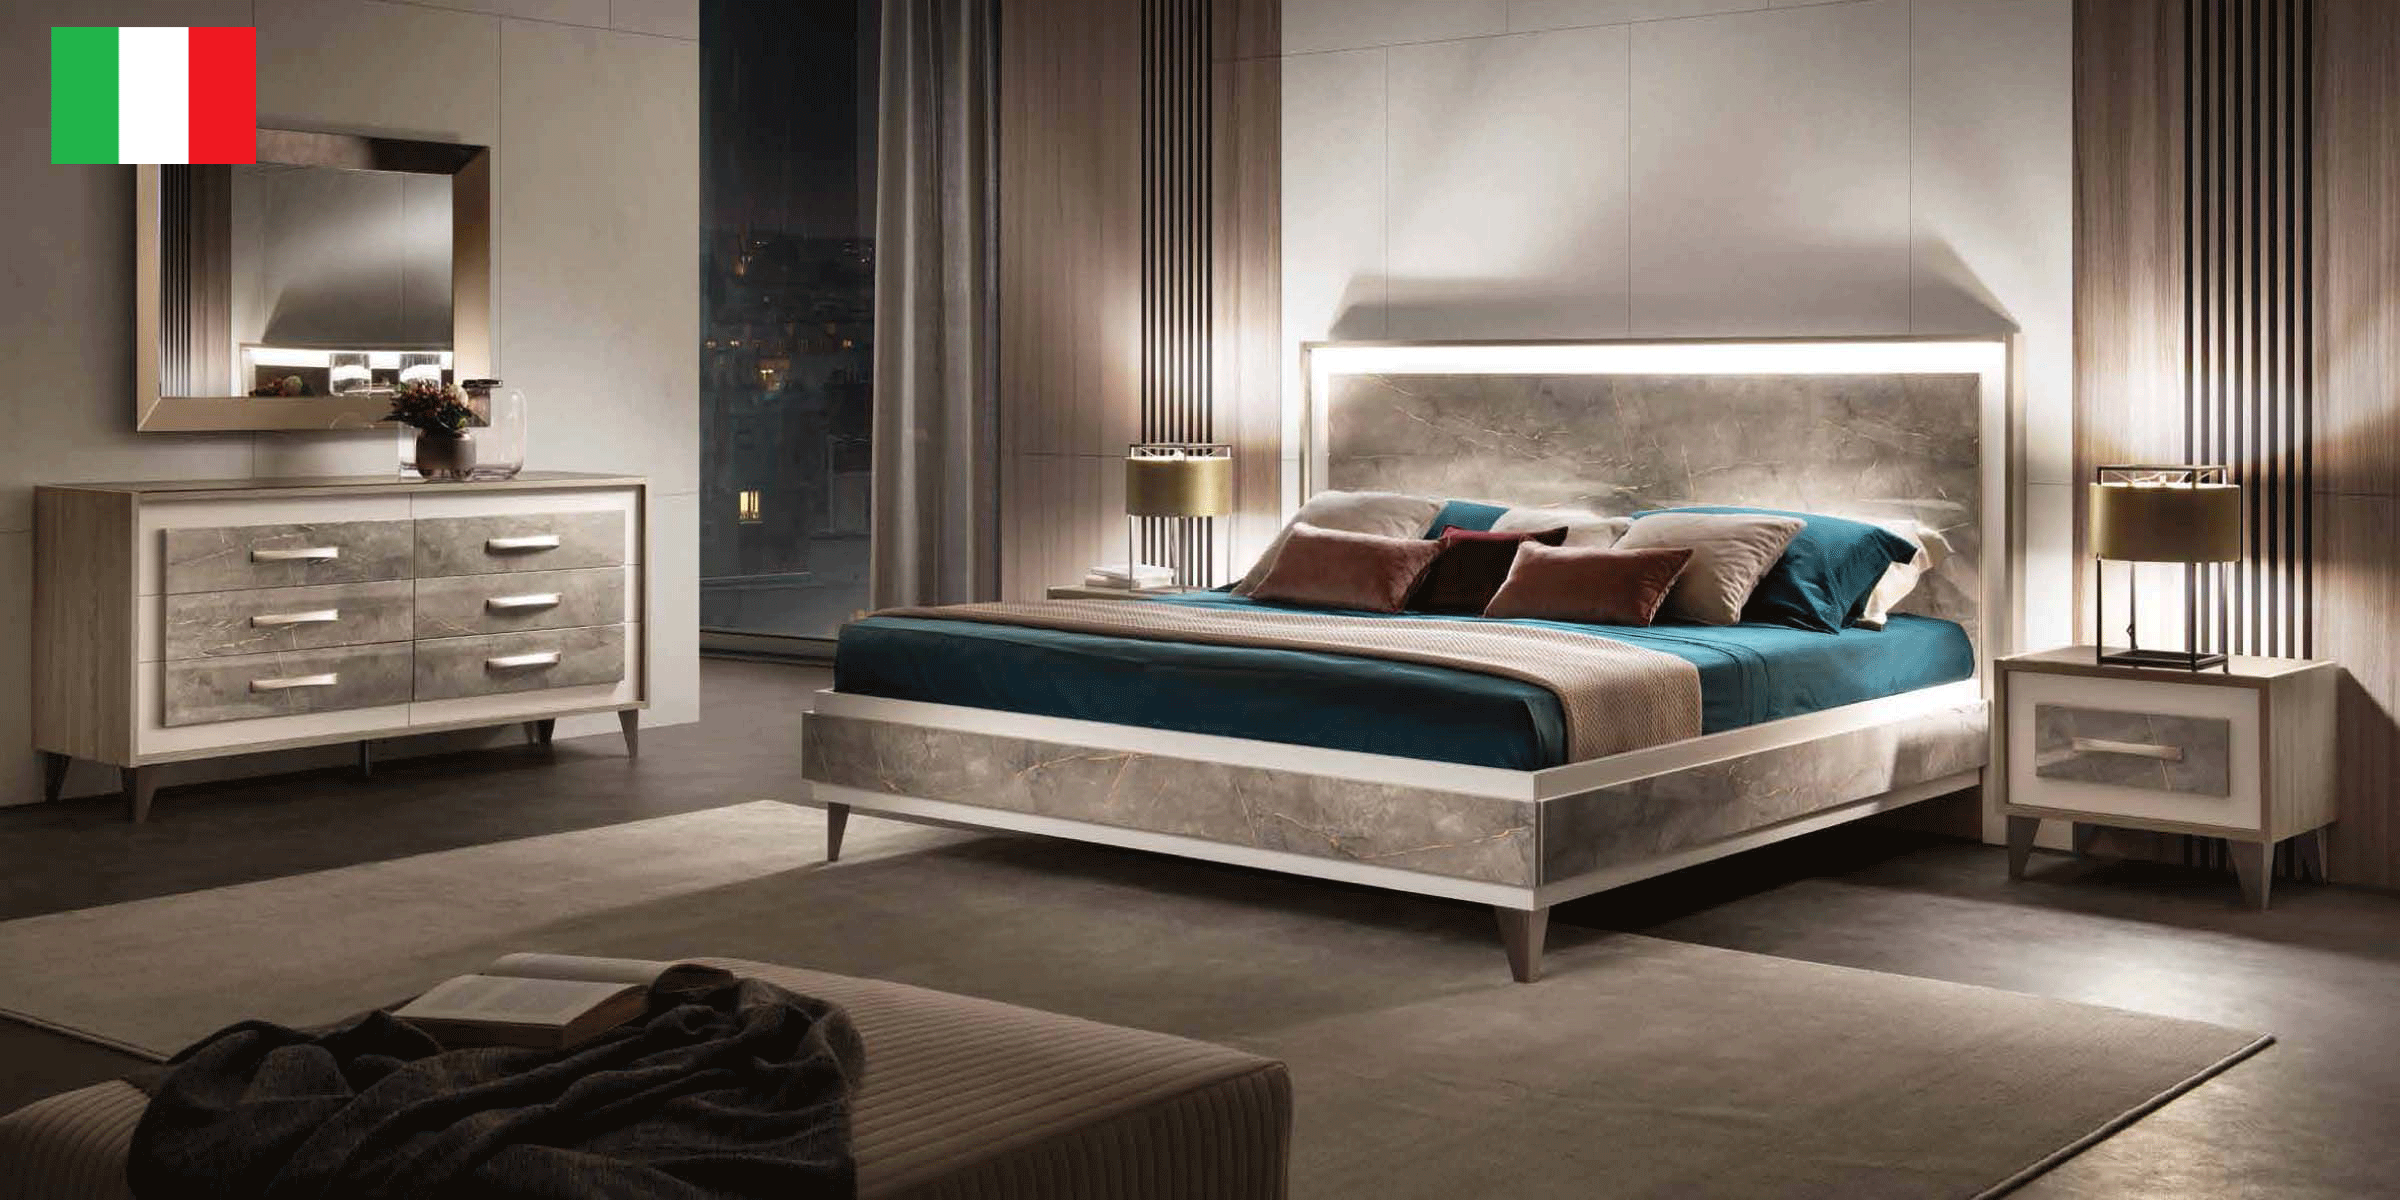 Bedroom Furniture Nightstands ArredoAmbra Bedroom by Arredoclassic with double dresser